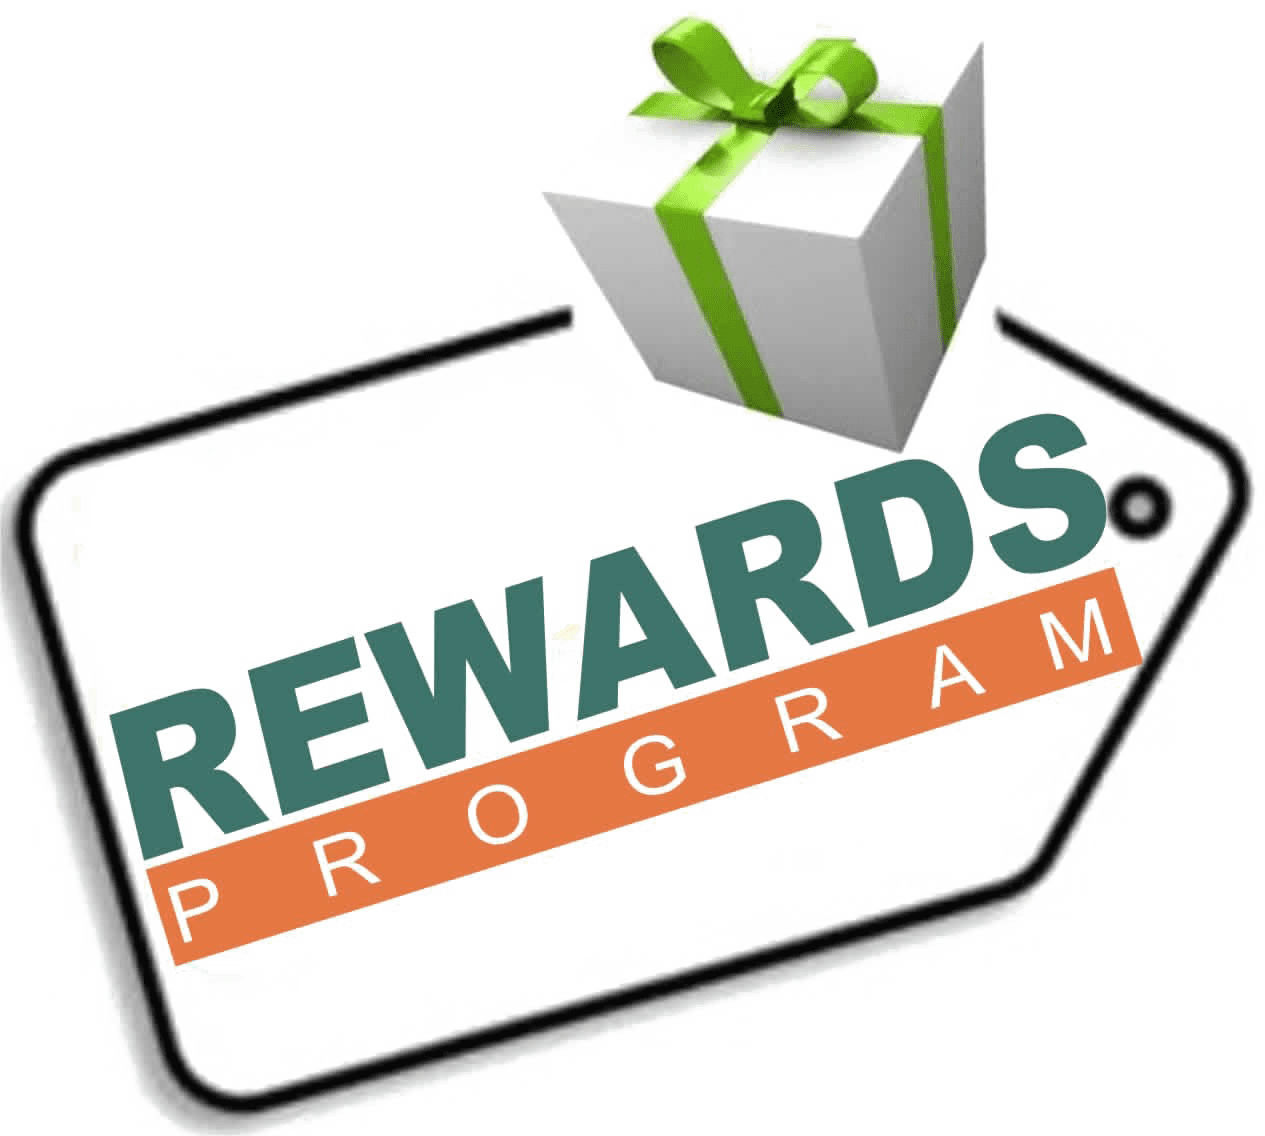 Rewards points